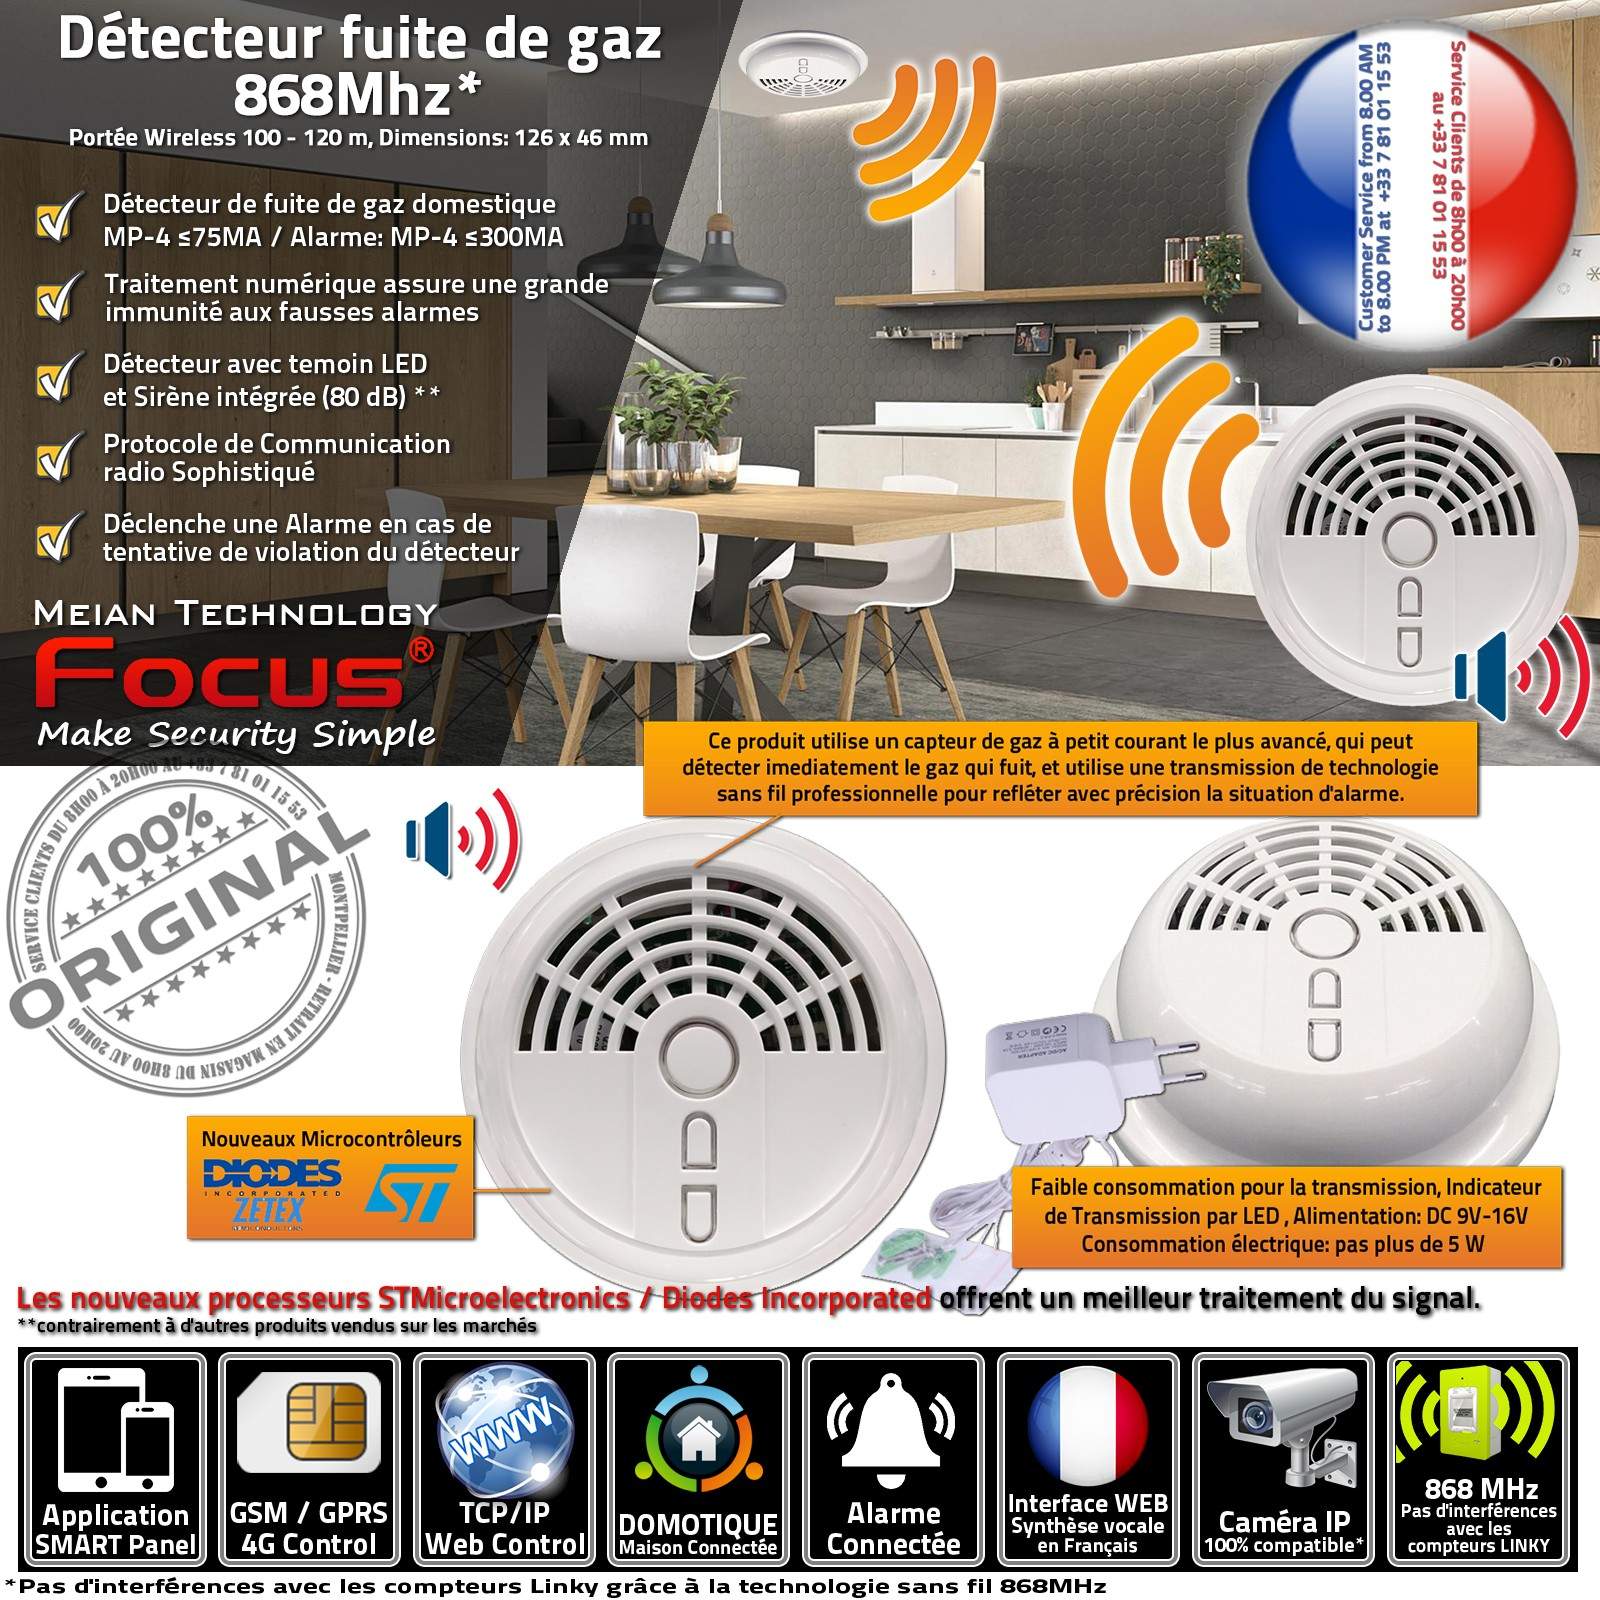 Detecteur gaz sans fil 20 40m 433mhz pour alarme sans fil ce1 detection gaz  alarme incendie gaz